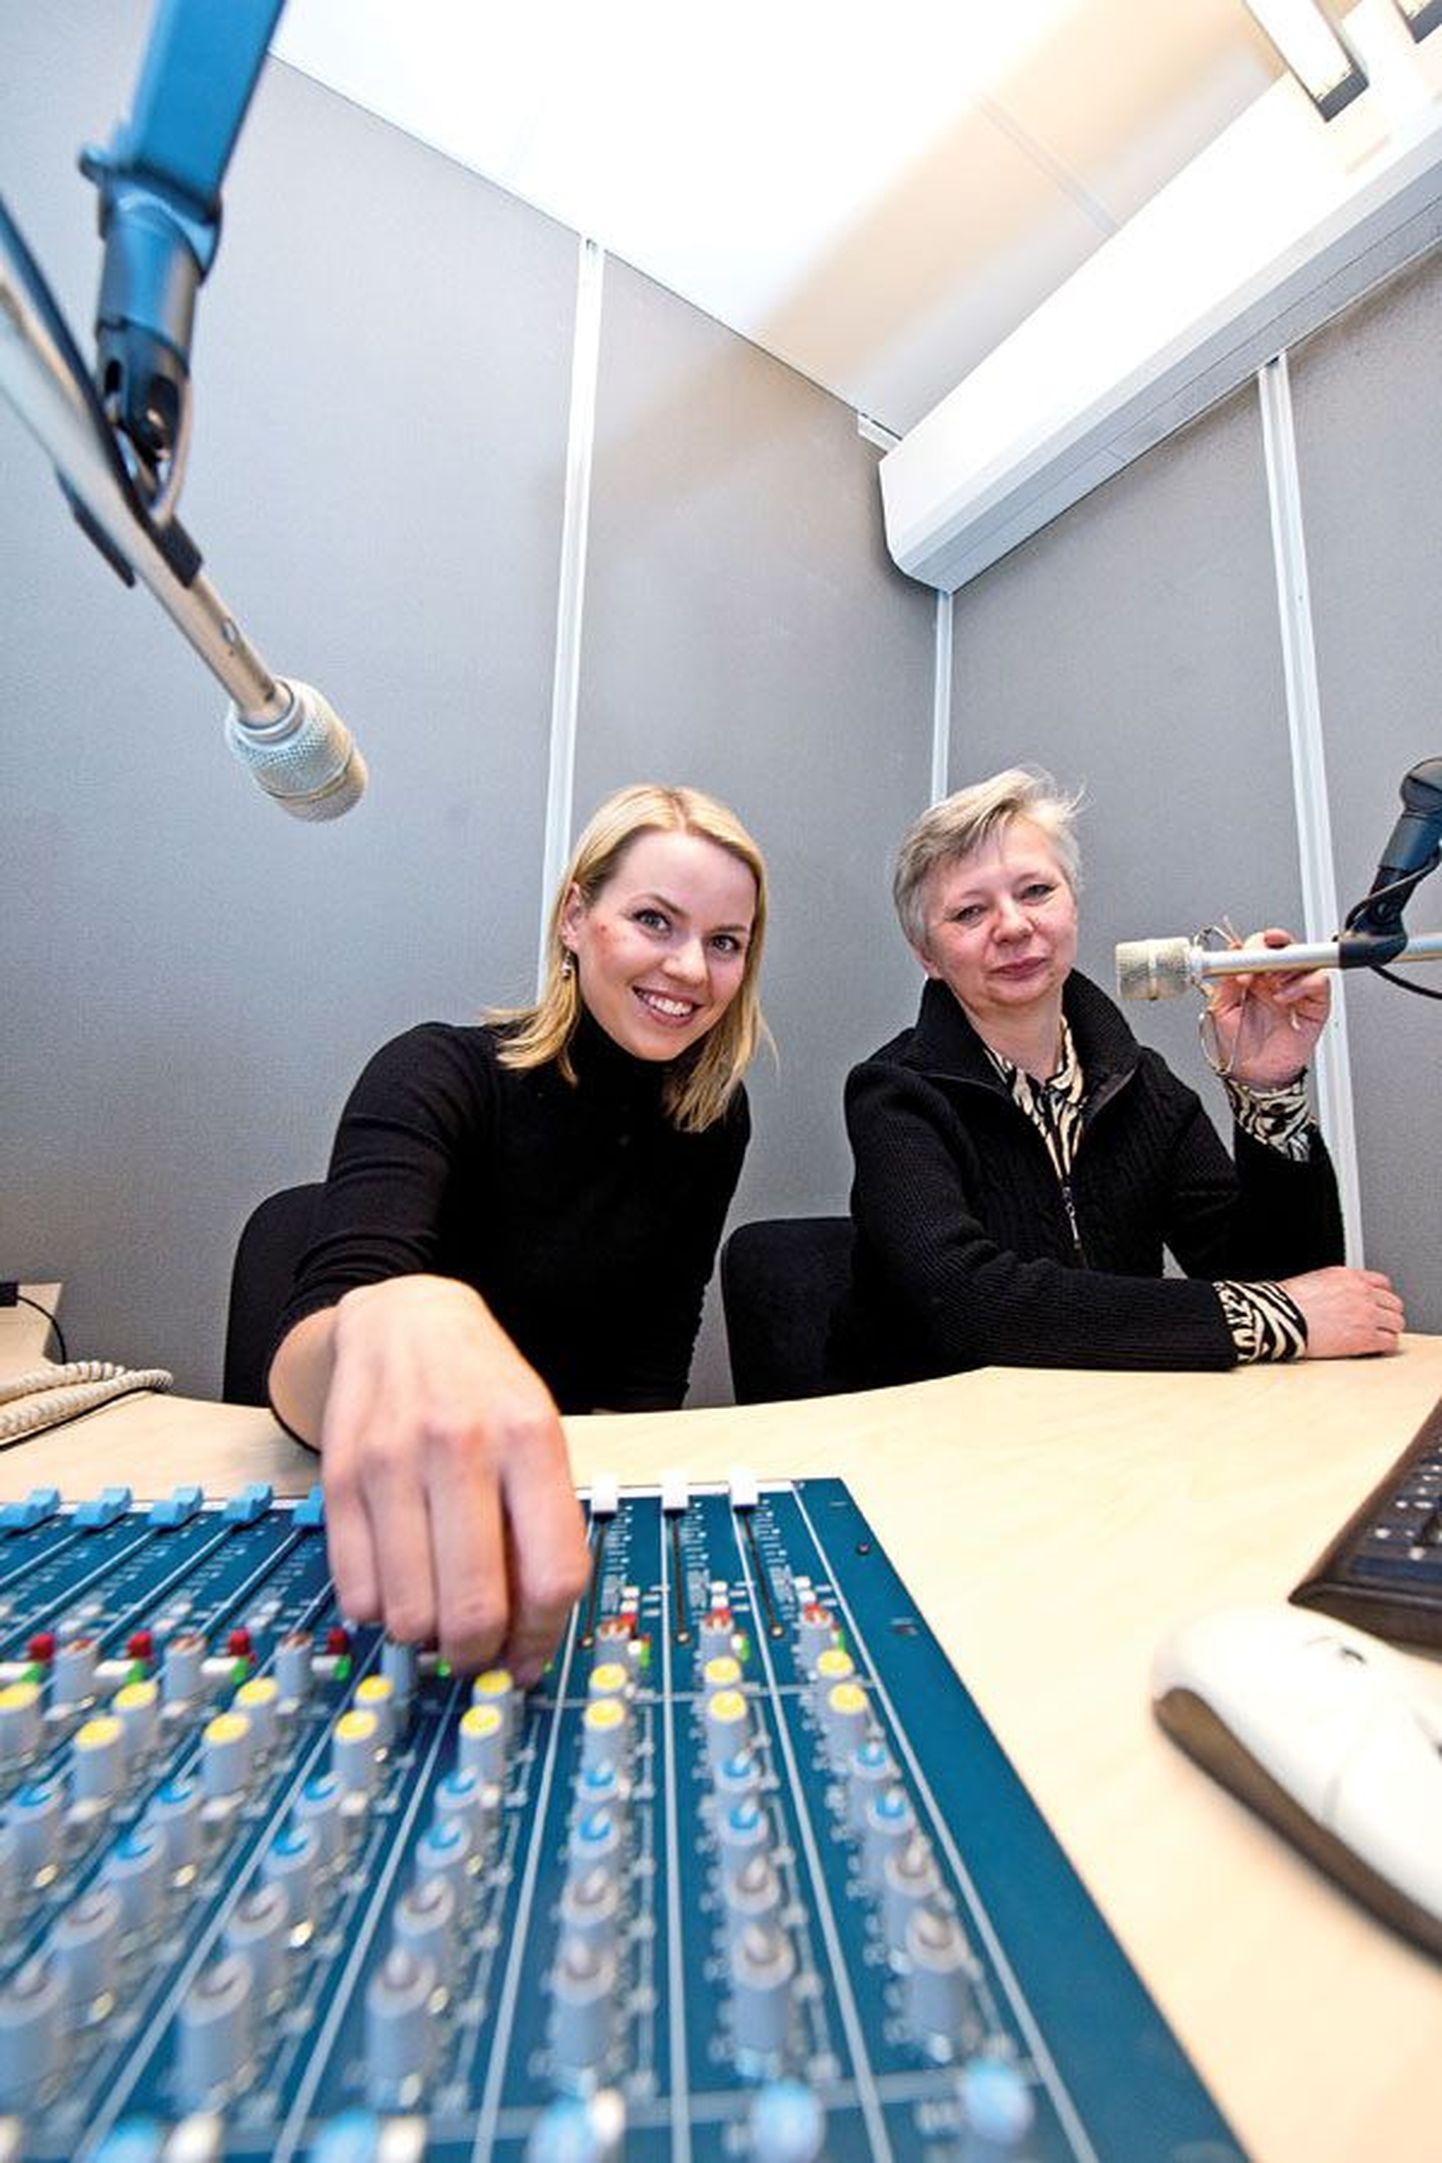 Ответственный редактор Радио-4 Ольга Шубин (справа) работает на радиостанции с первого дня вещания, журналистка Кира Эвве пришла в редакцию два месяца назад.